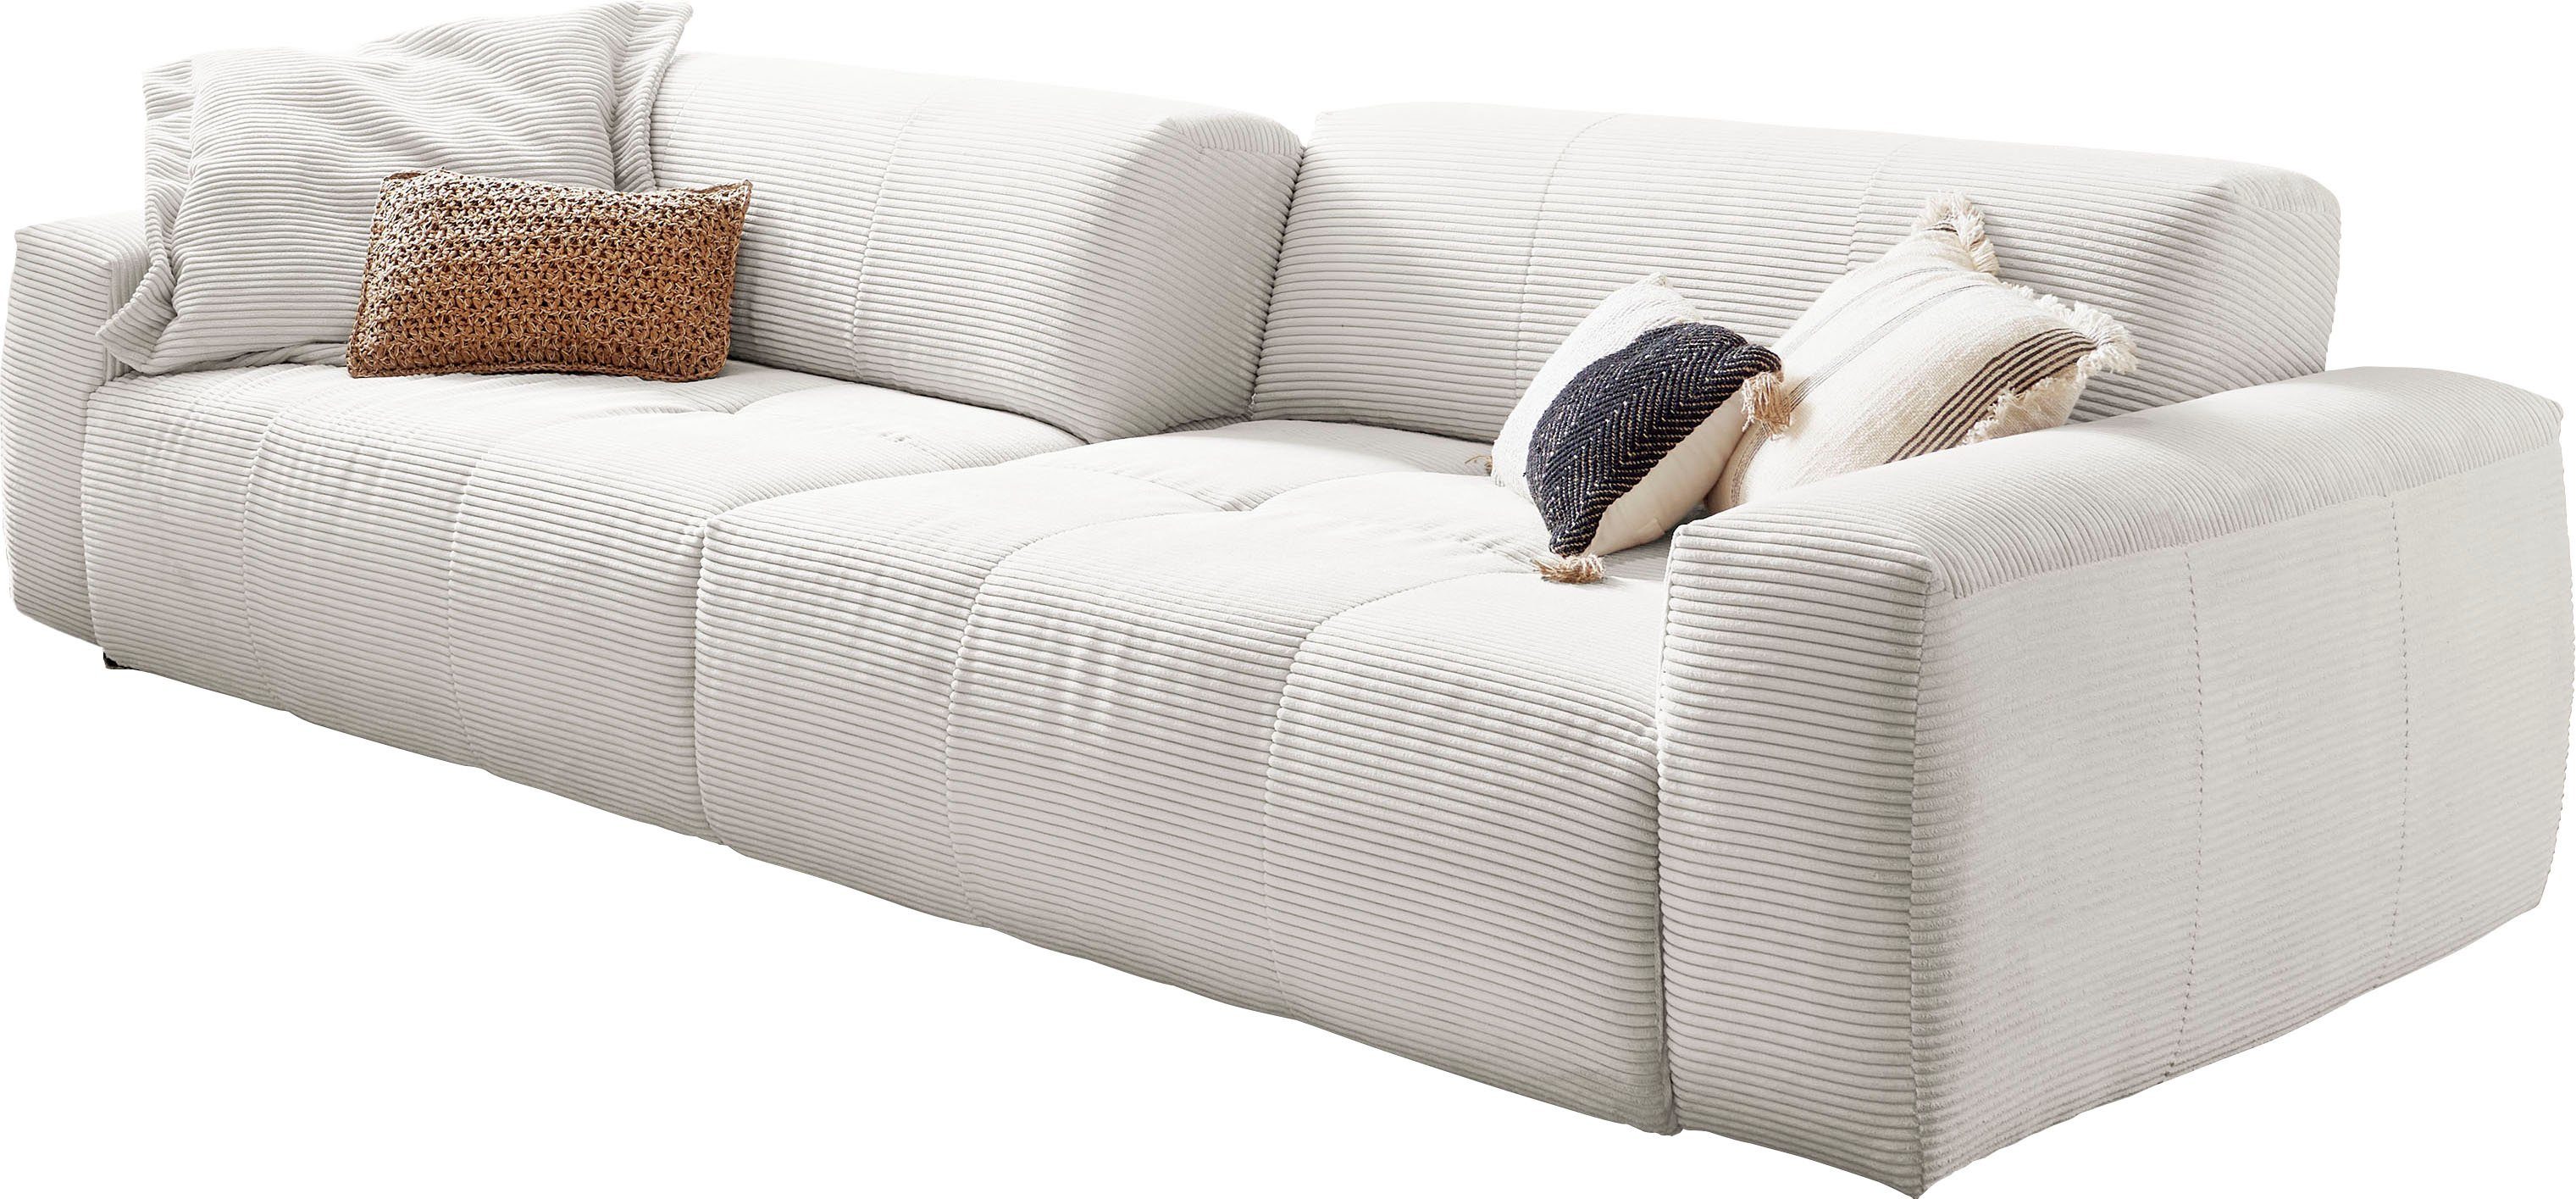 Rückenlehne, Zwei Cord durch Yoshy, 3C Candy Sitztiefen verstellbare weiß Big-Sofa Bezug in